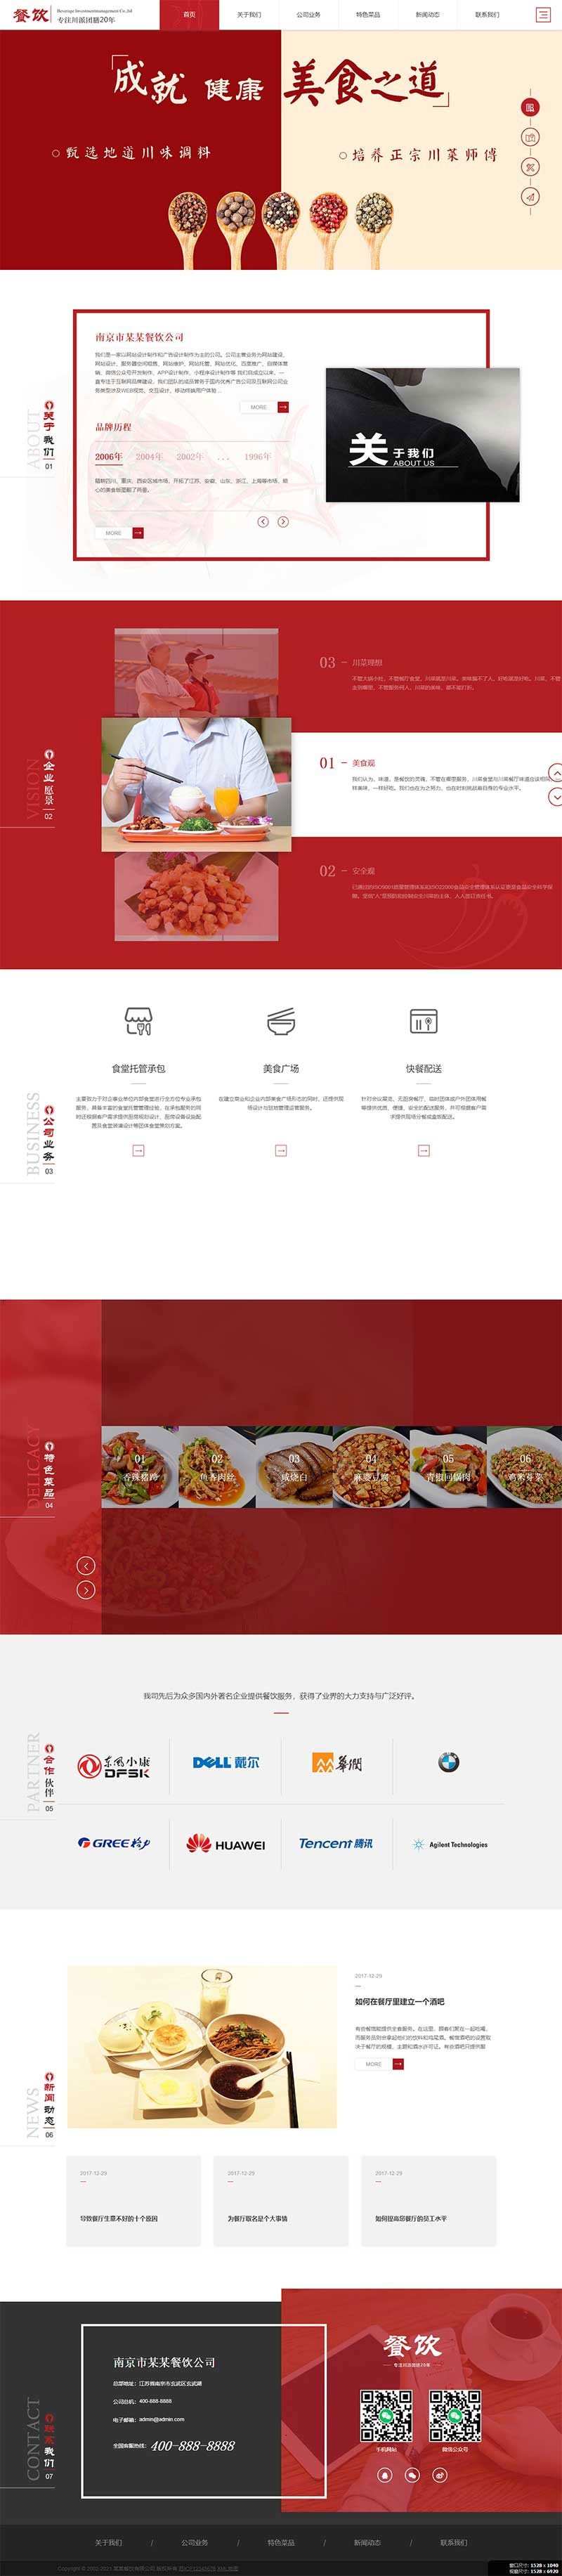 织梦dedecms模板红色高端响应式美食平台餐饮集团餐饮网站源码